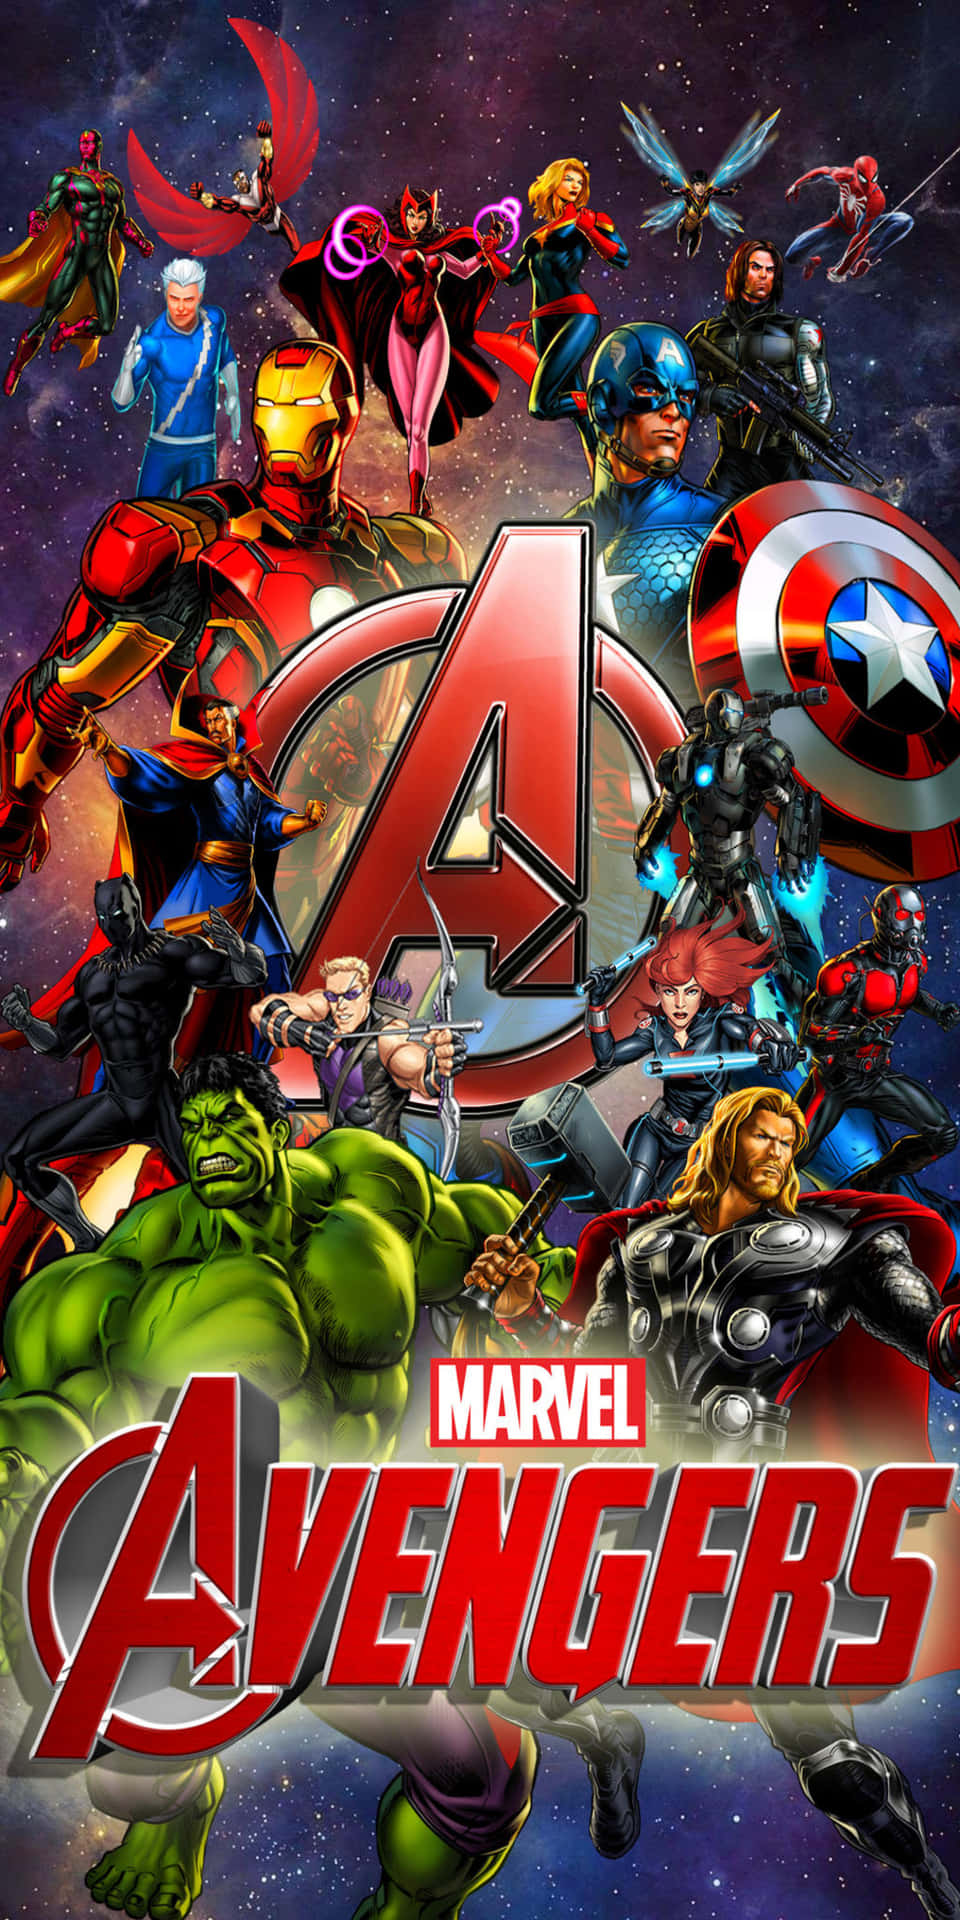 Marvel Pixel 3 Avengers Background